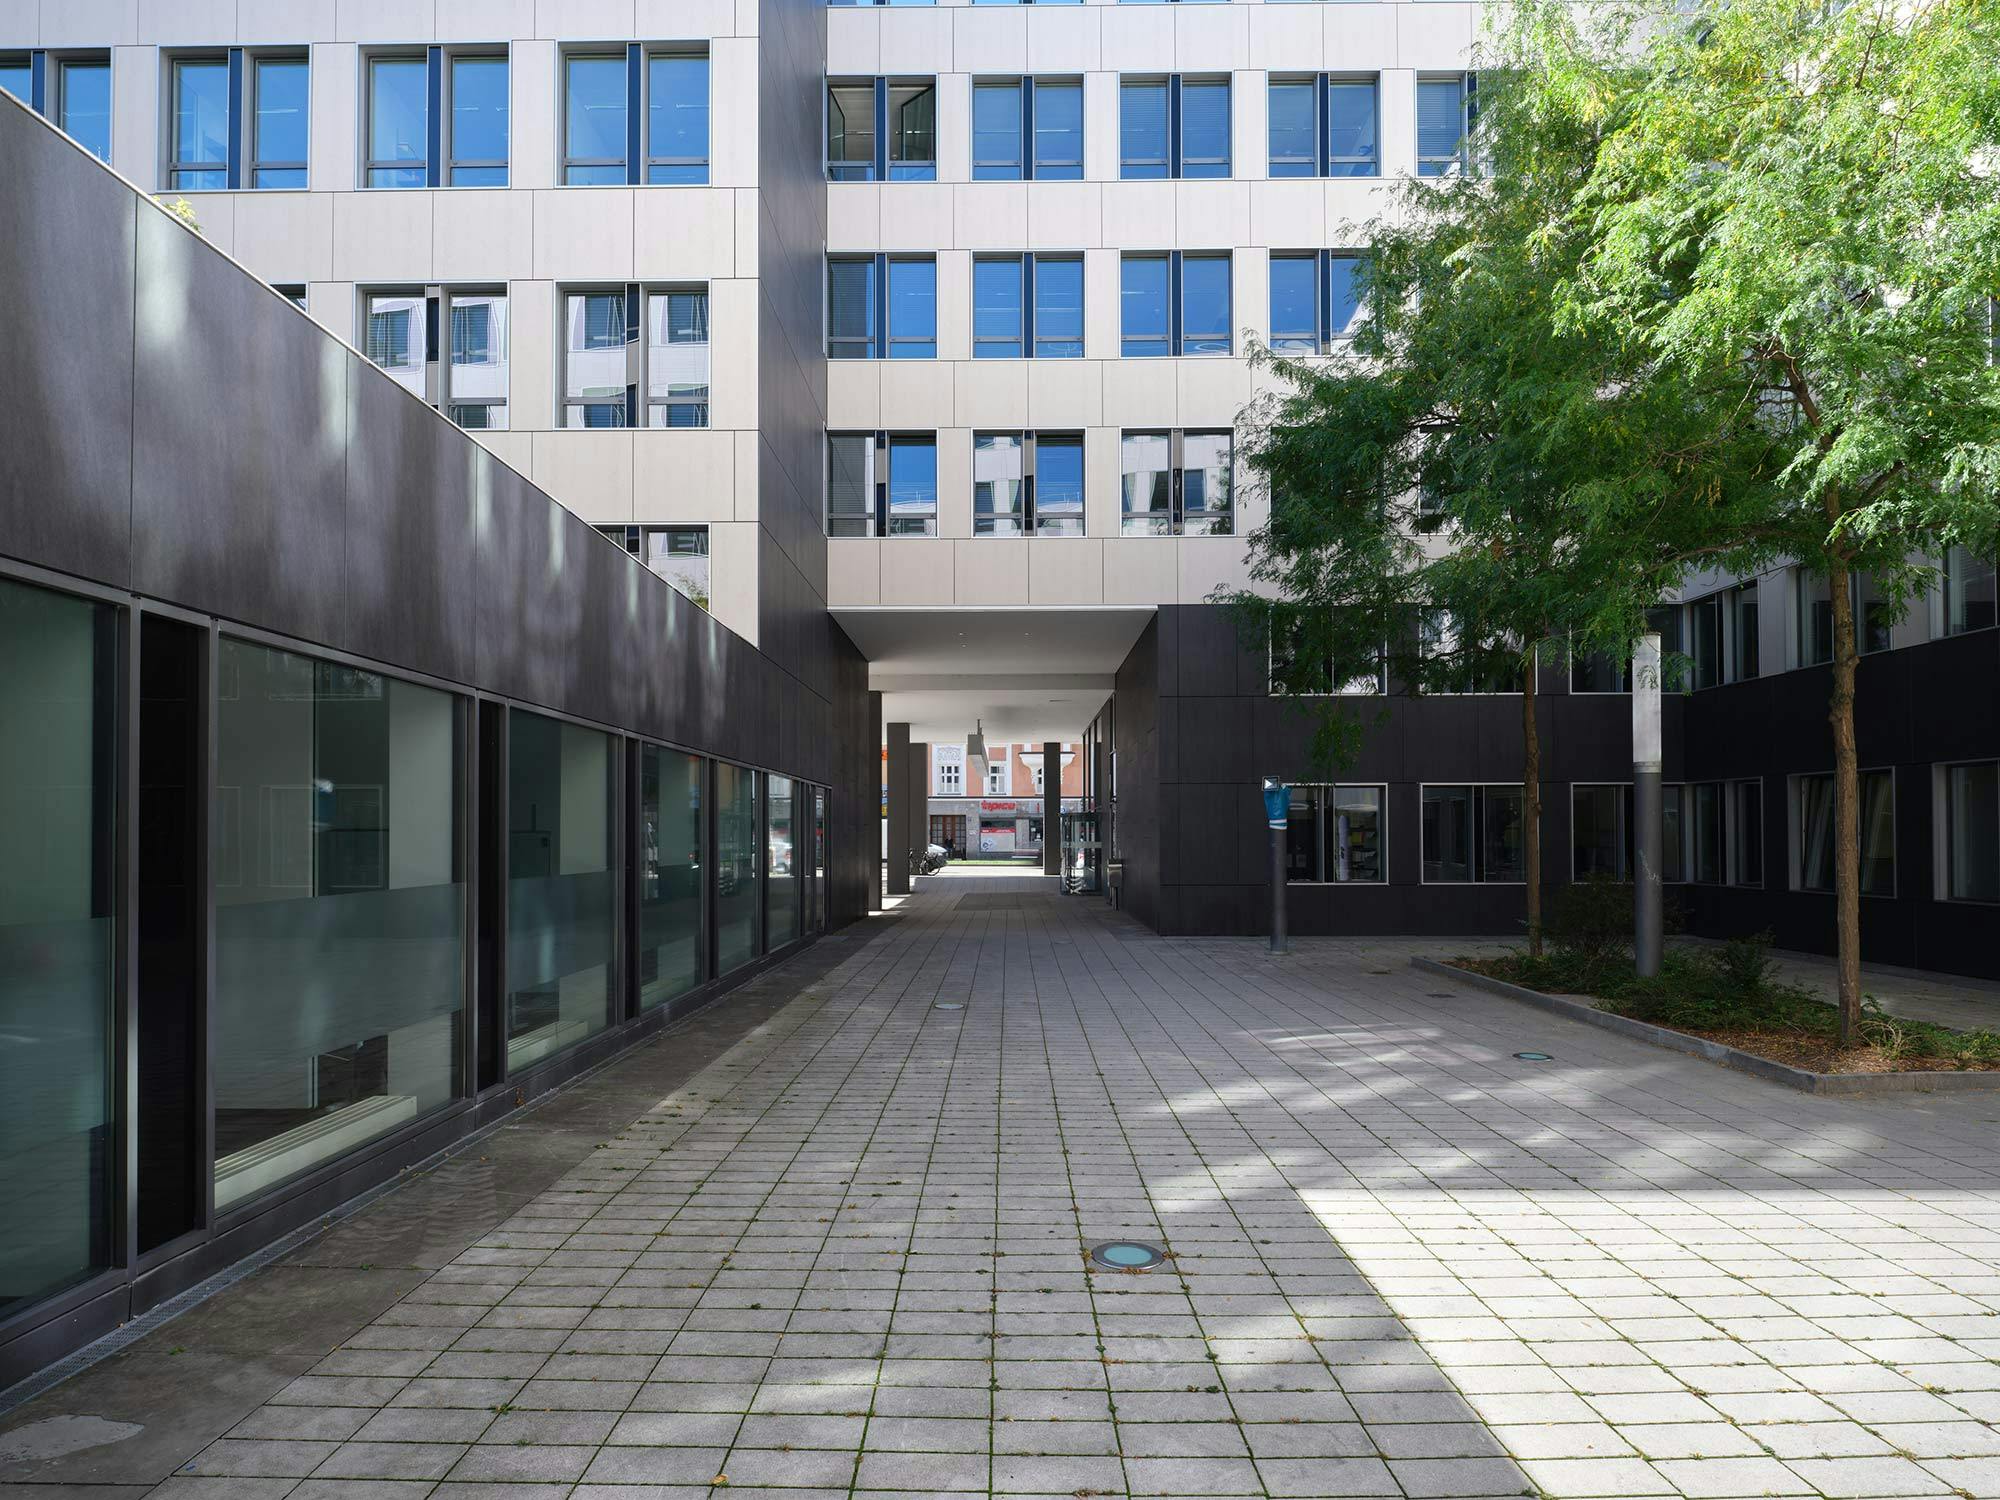 Image of Fachada office building Munich.jpg?auto=format%2Ccompress&ixlib=php 3.3 in Kontorsbyggnaden Fenix i Stockholm, där Dekton-fasaden bevarar den ursprungliga strukturen och det karakteristiska industriella arvet - Cosentino